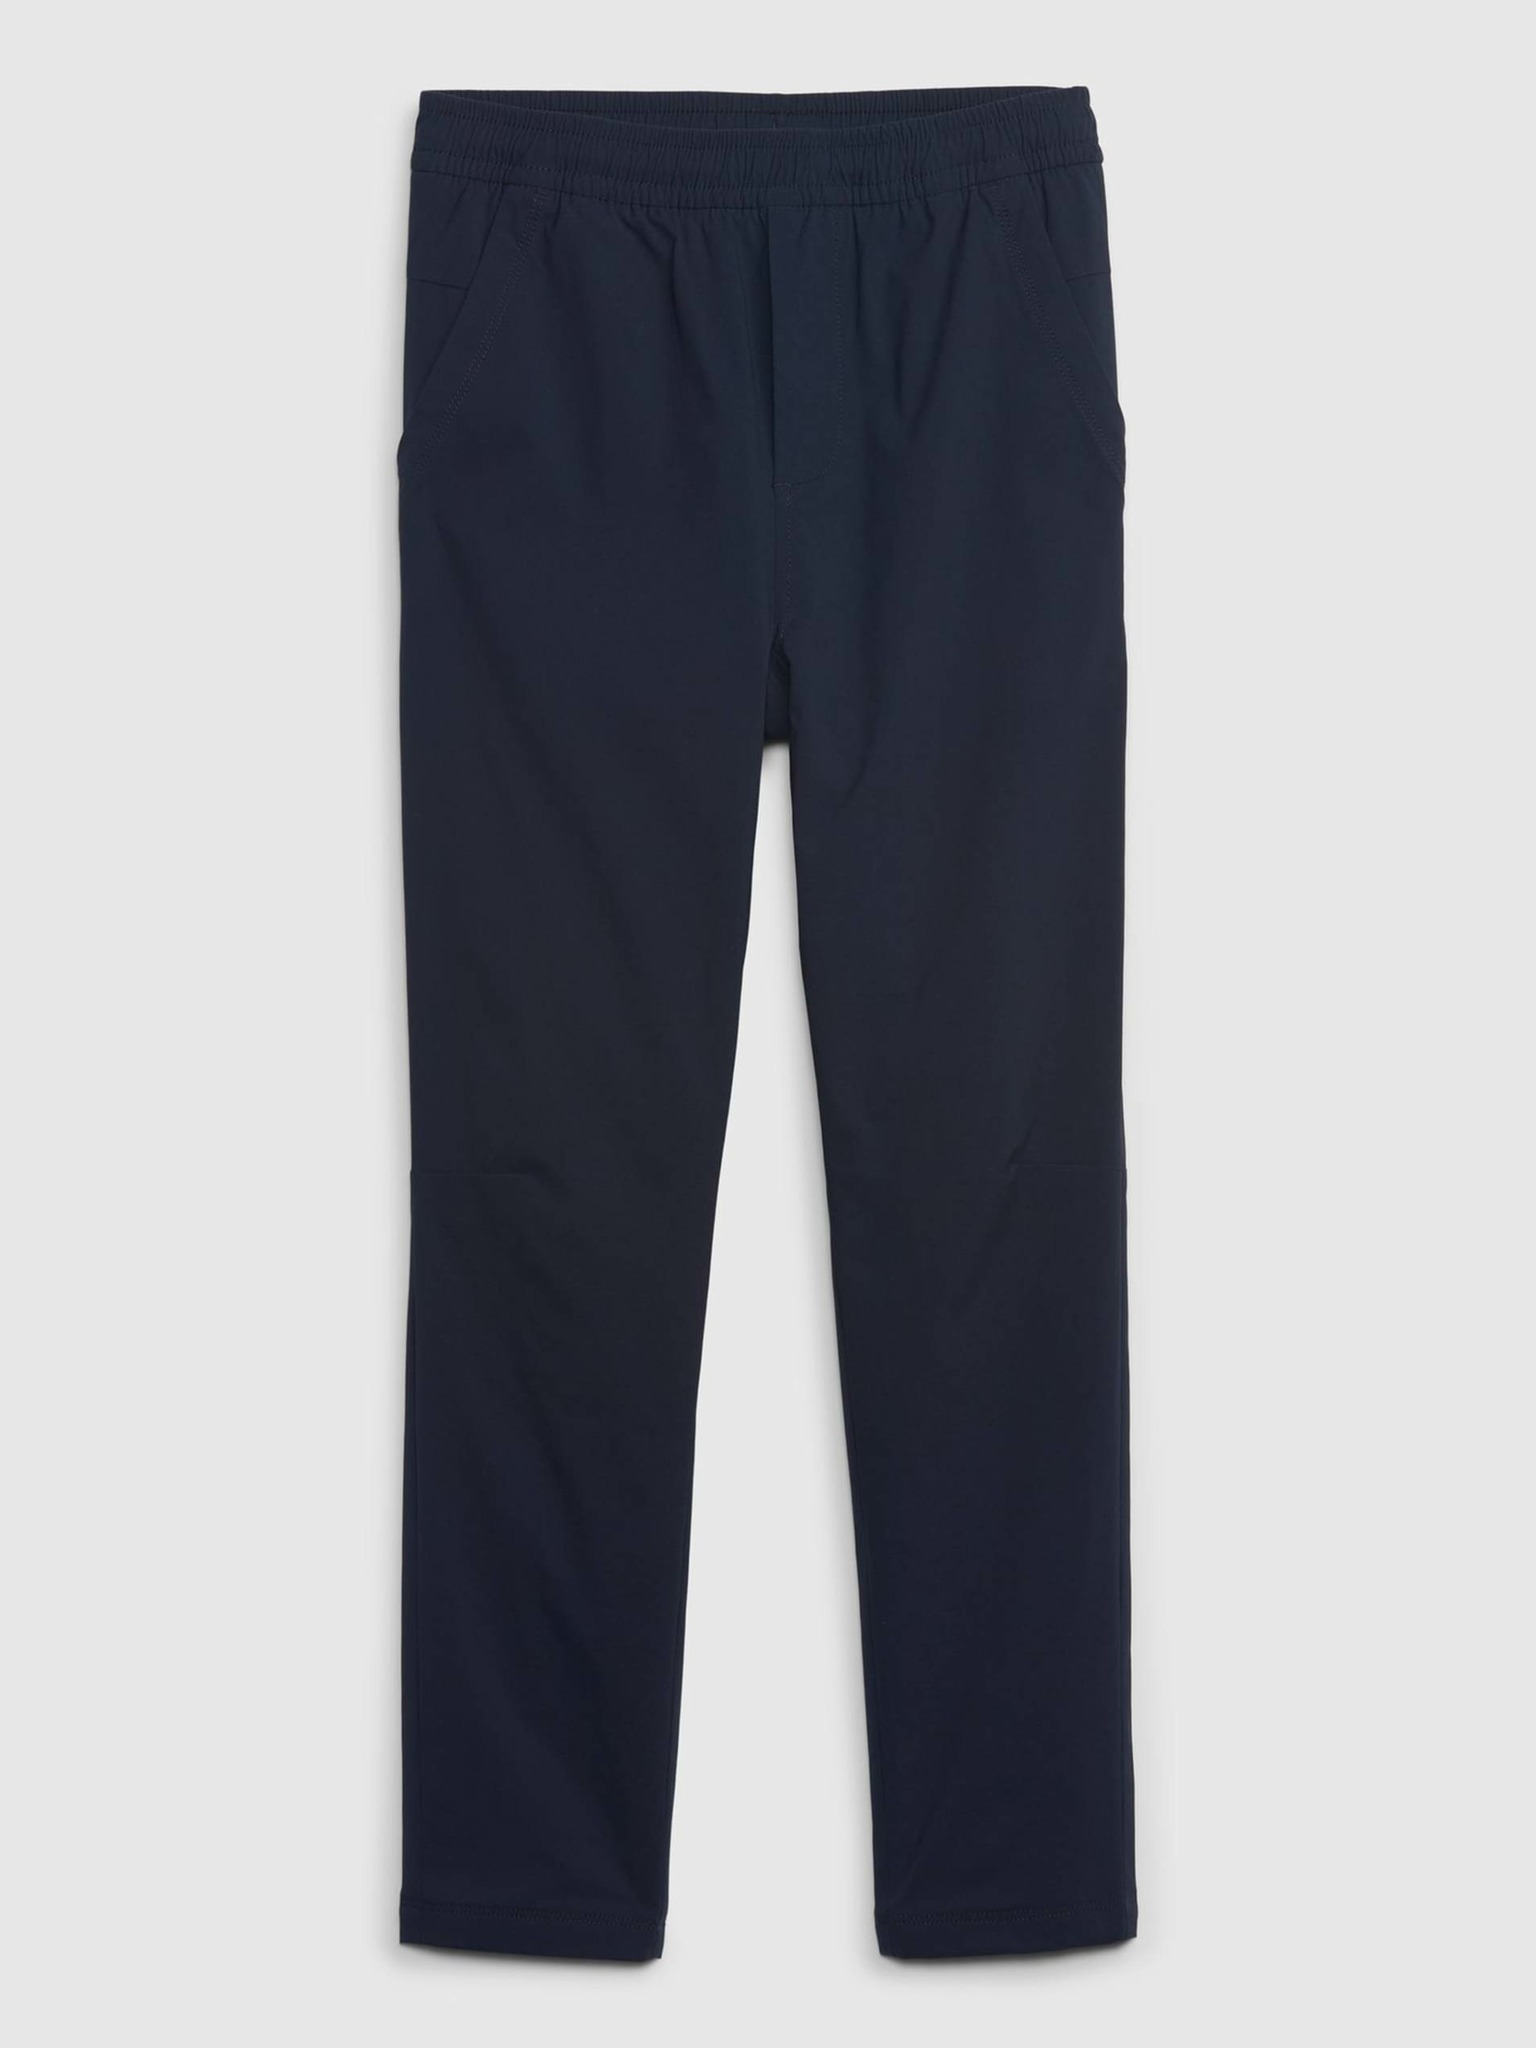 Fotografie Tmavě modré klučičí kalhoty zateplené GAP - 152-158